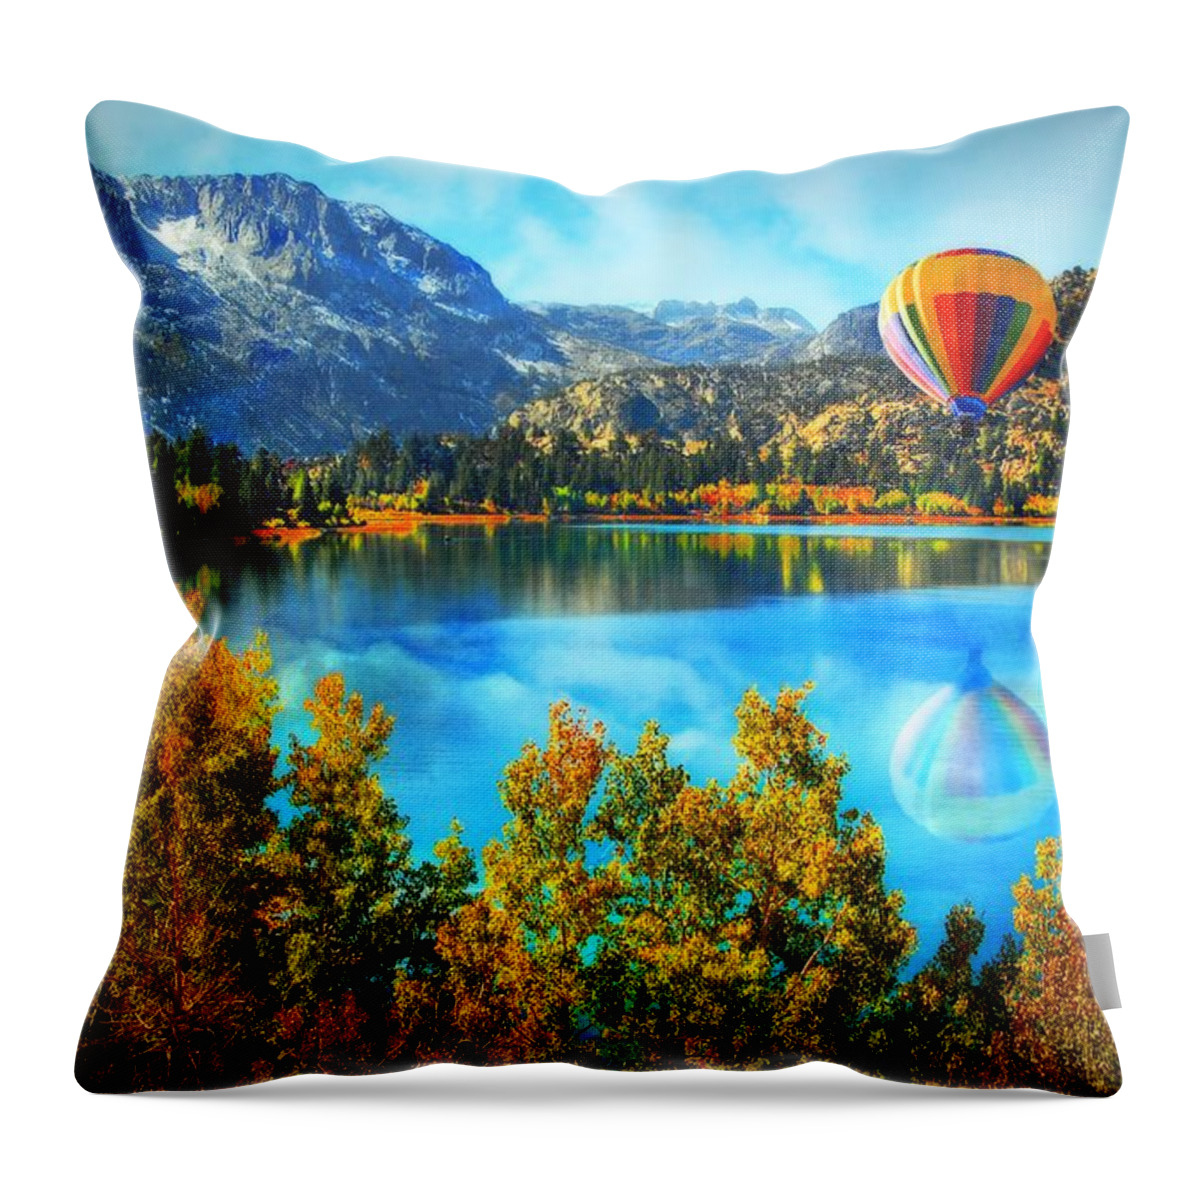 Dream Throw Pillow featuring the photograph Sierra Dreaming by Lynn Bauer